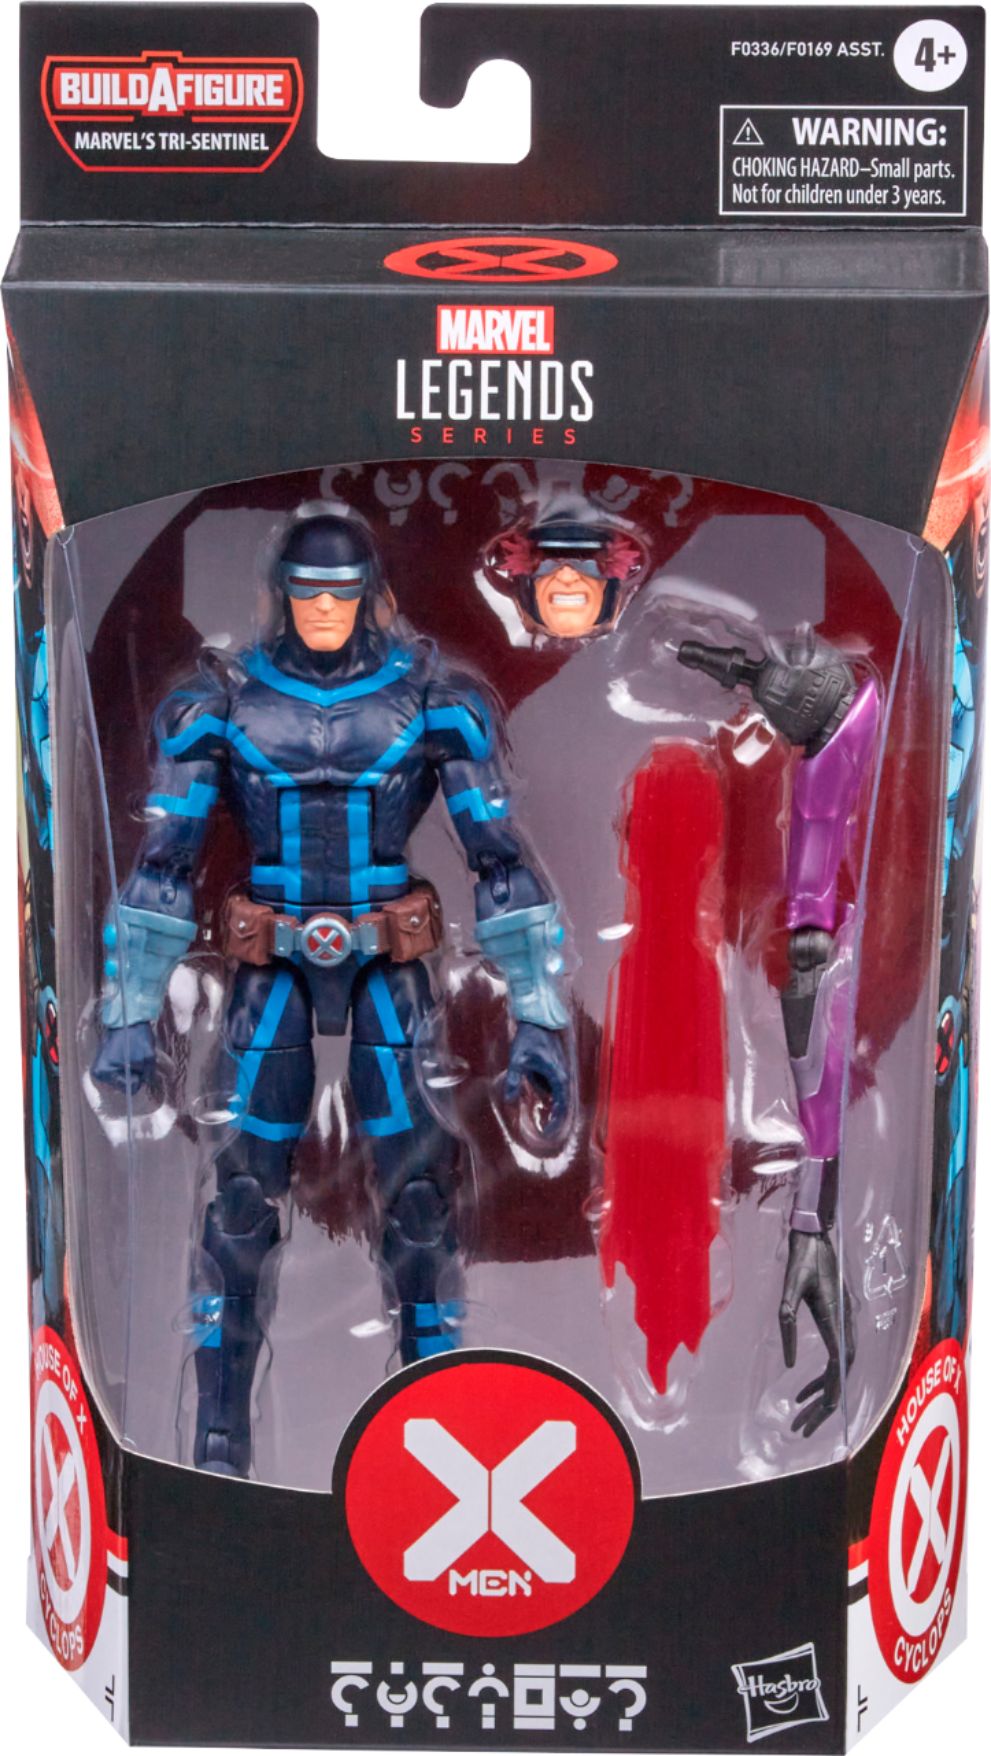 Hasbro Marvel Legends Series X Men Cyclops Action Figure F0336 Best Buy